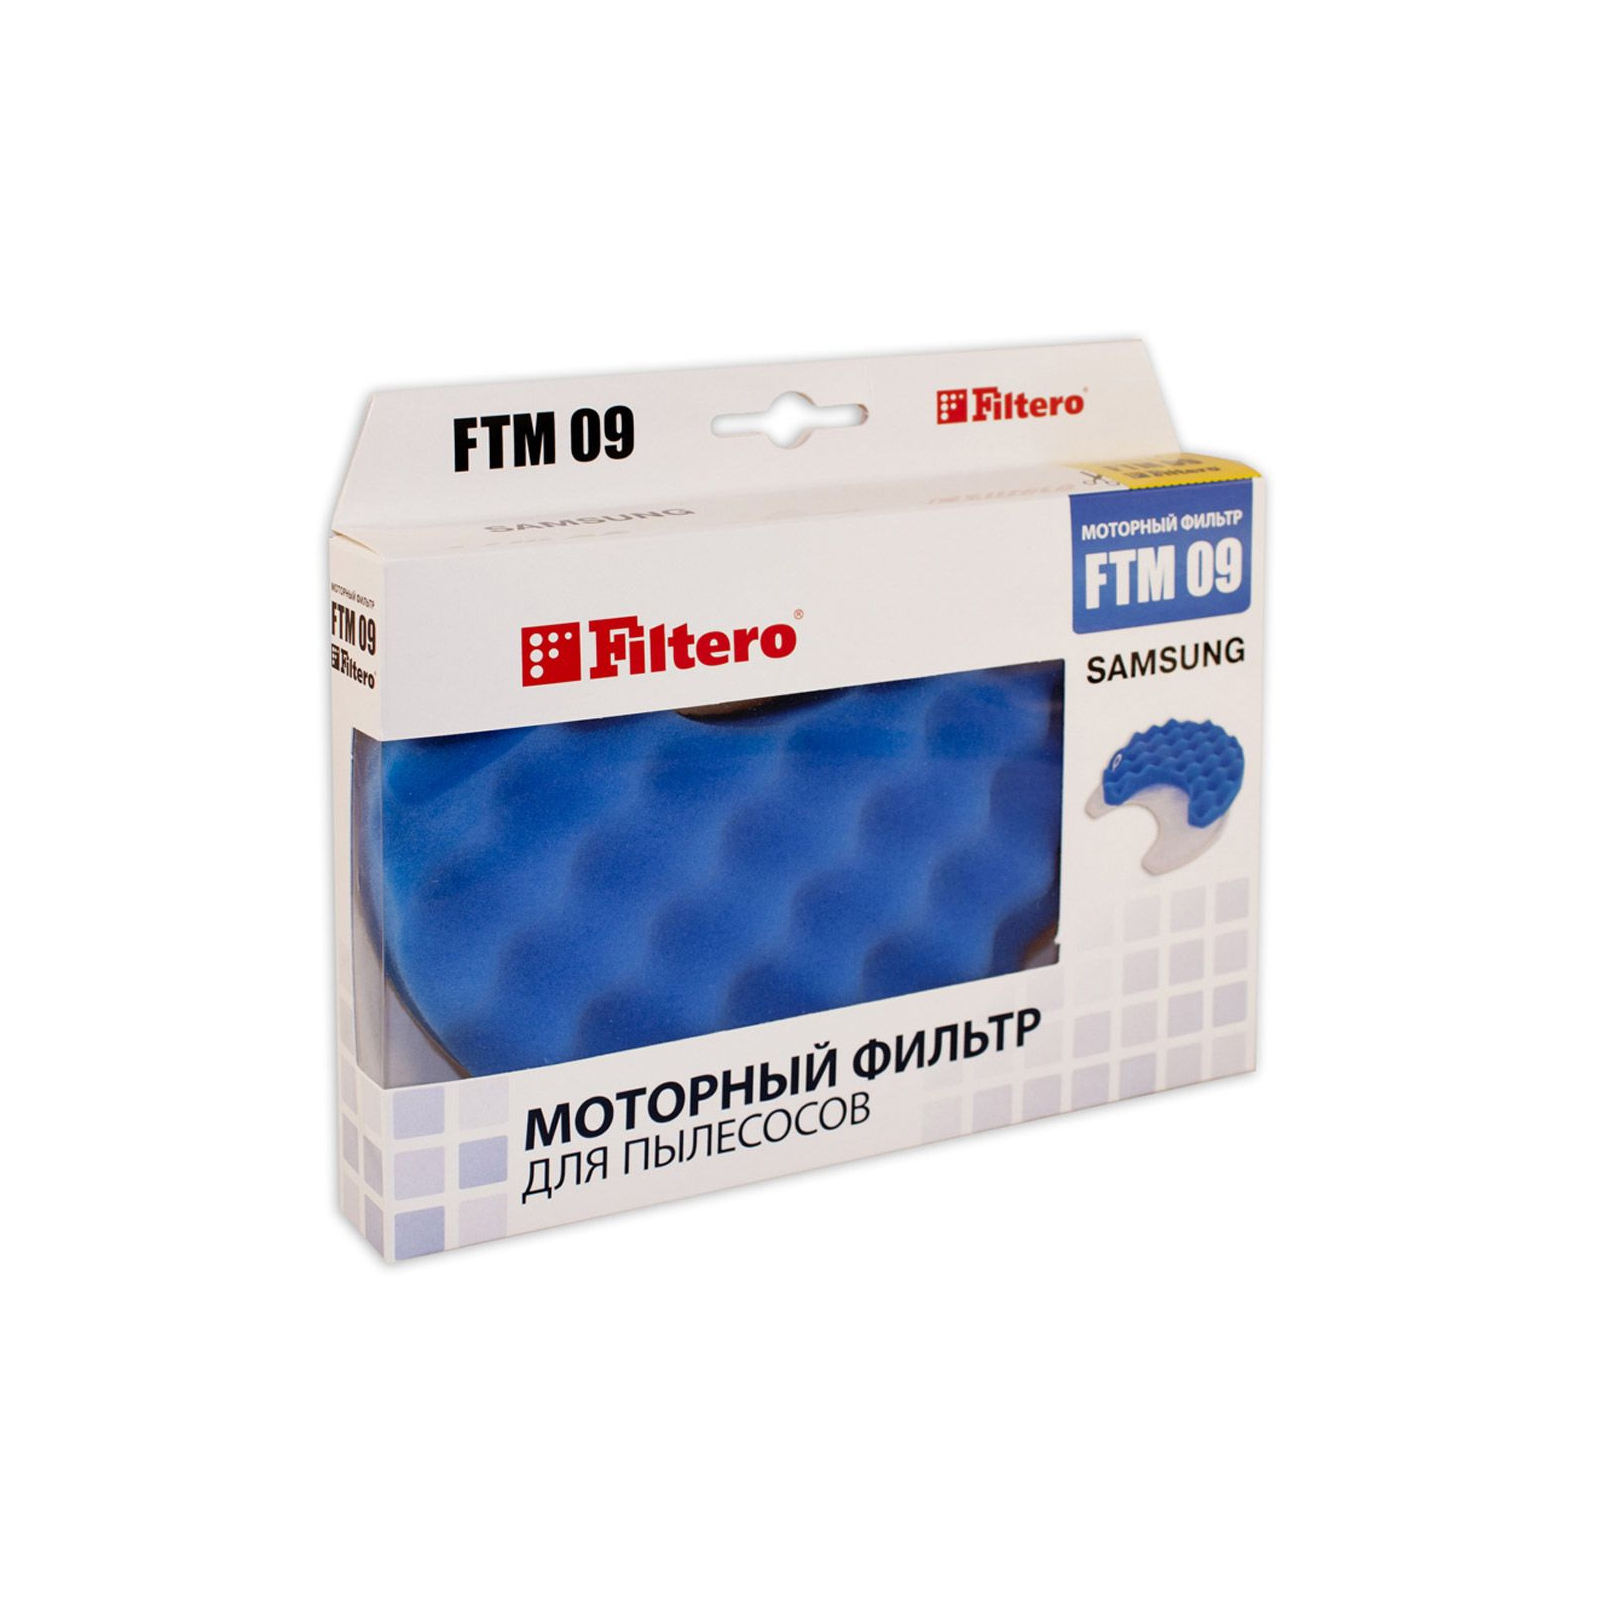 Фильтр для пылесоса Filtero FTM 09